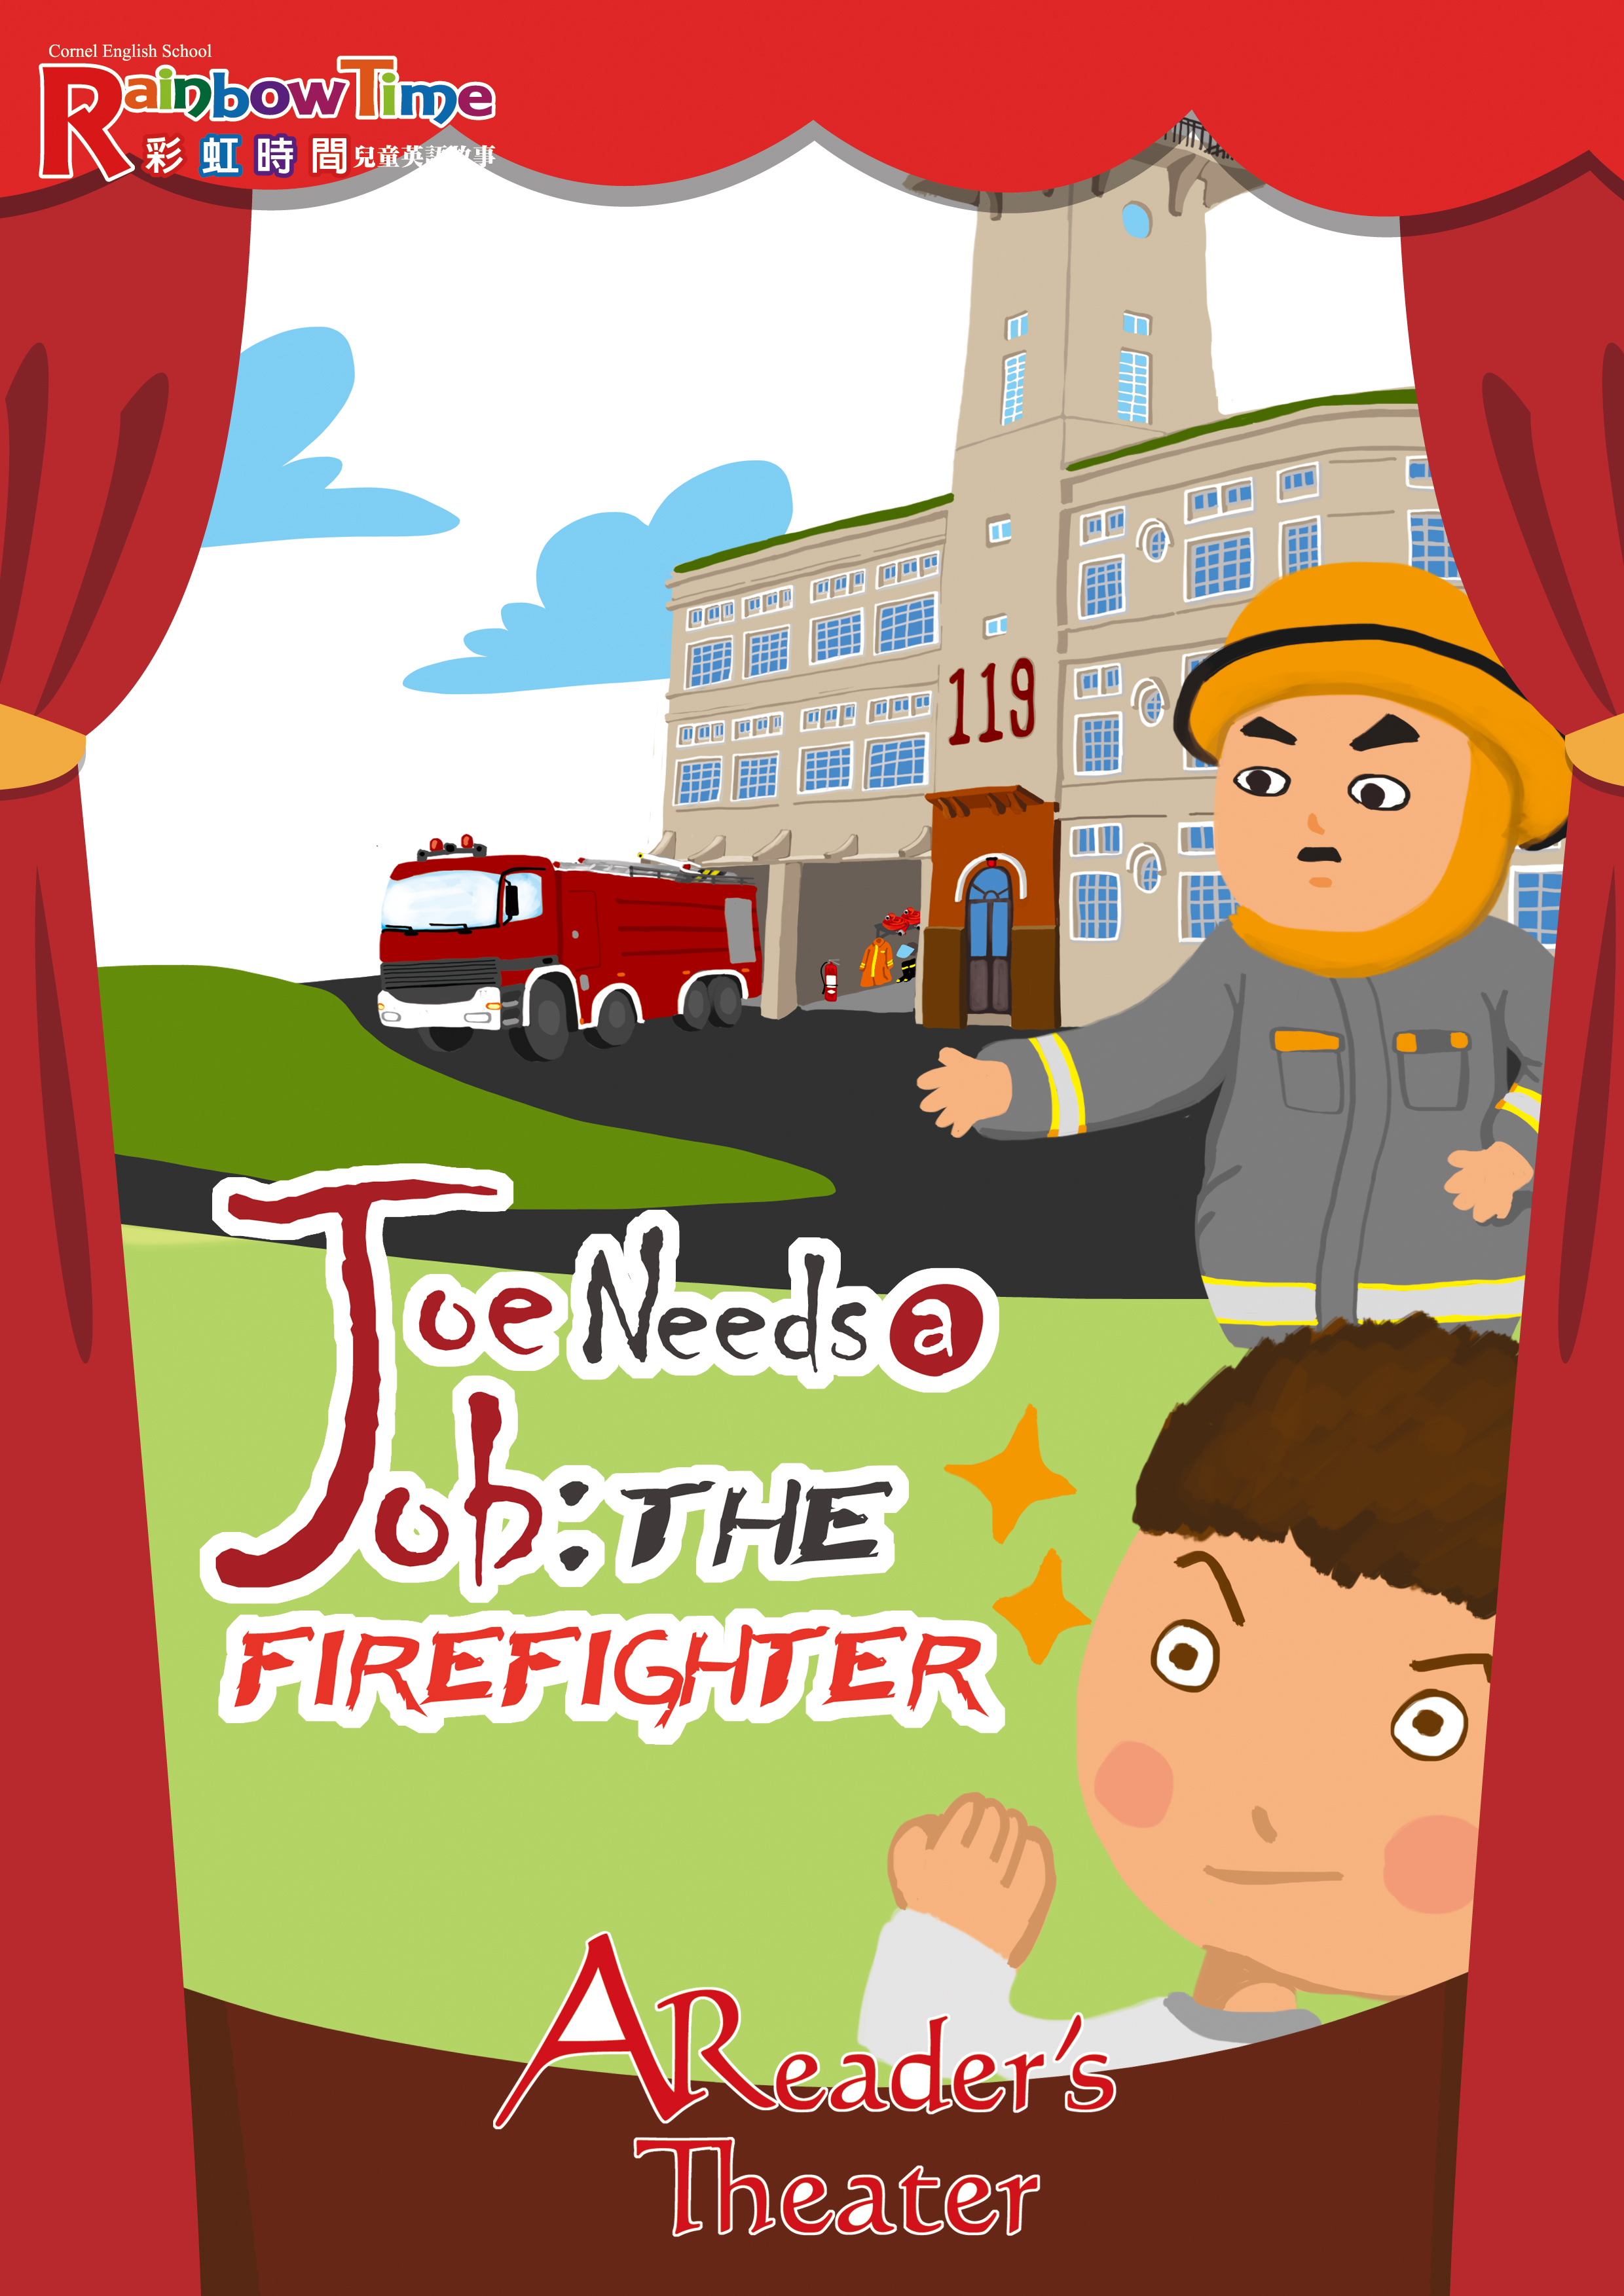 Joe Needs a Job: The Firefighter